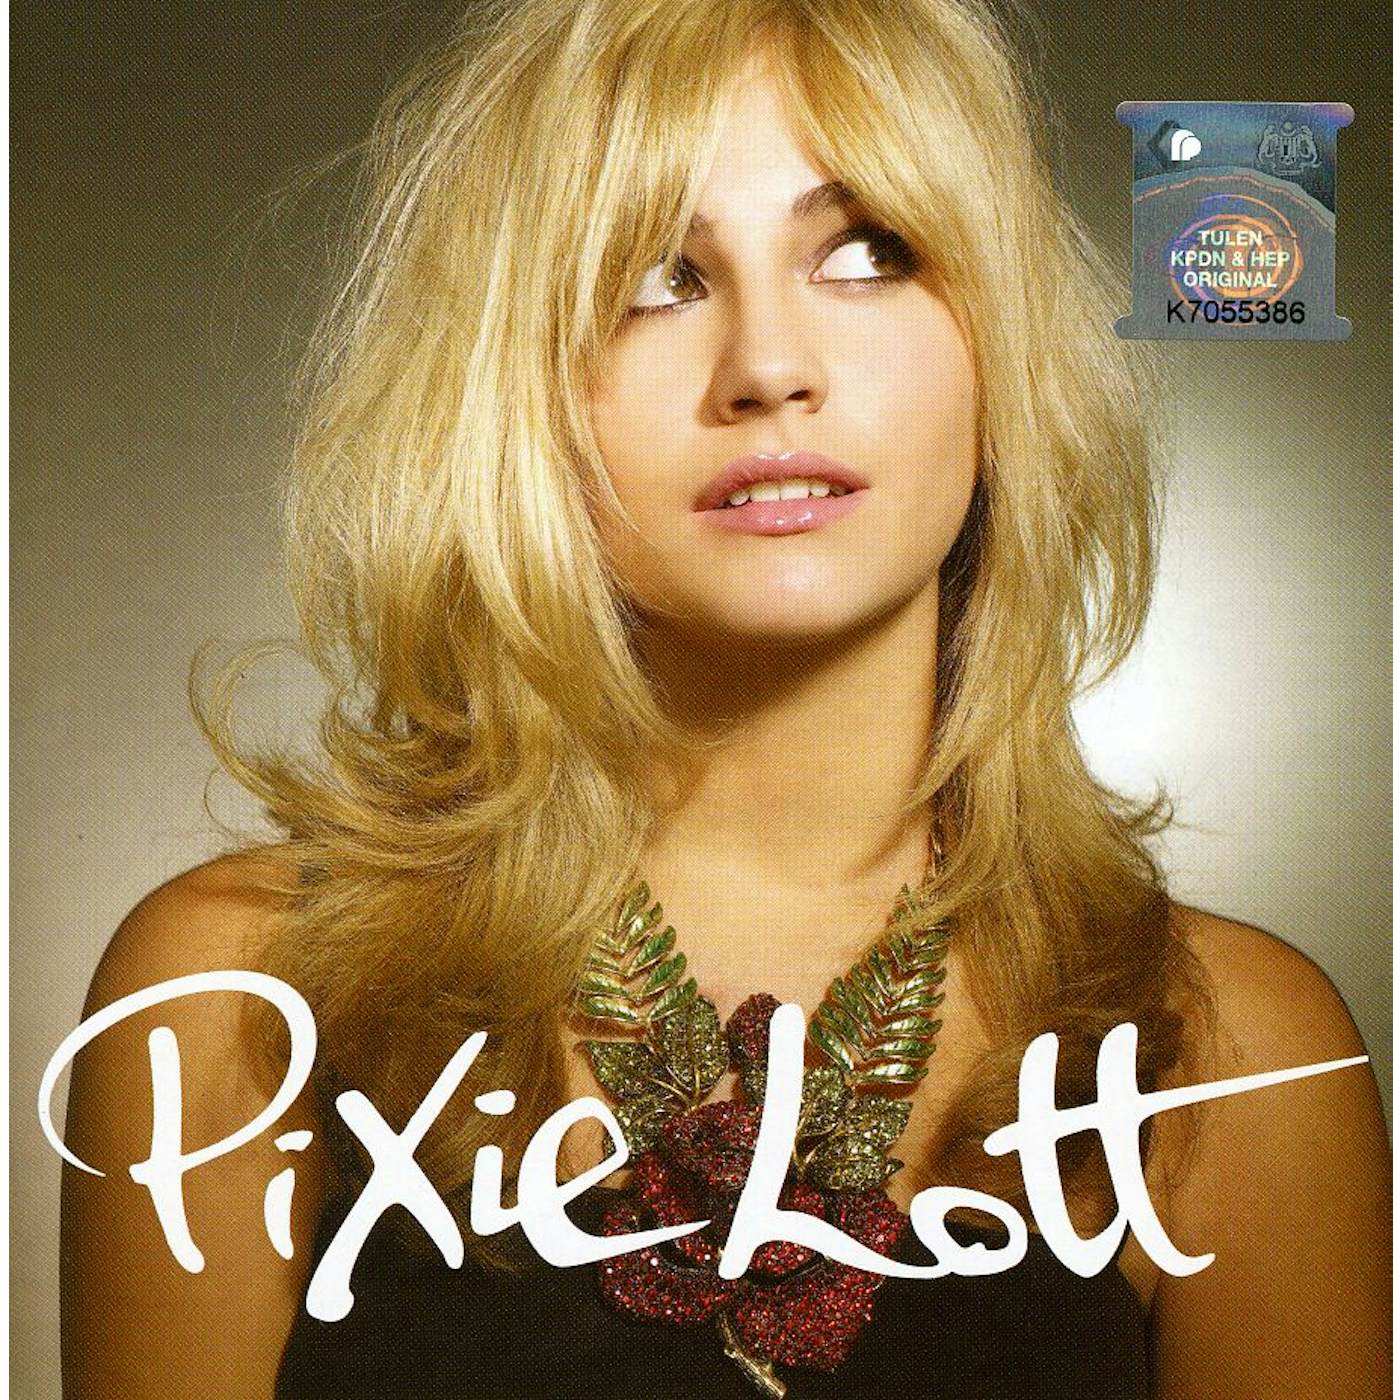 Pixie Lott TURN IT UP CD